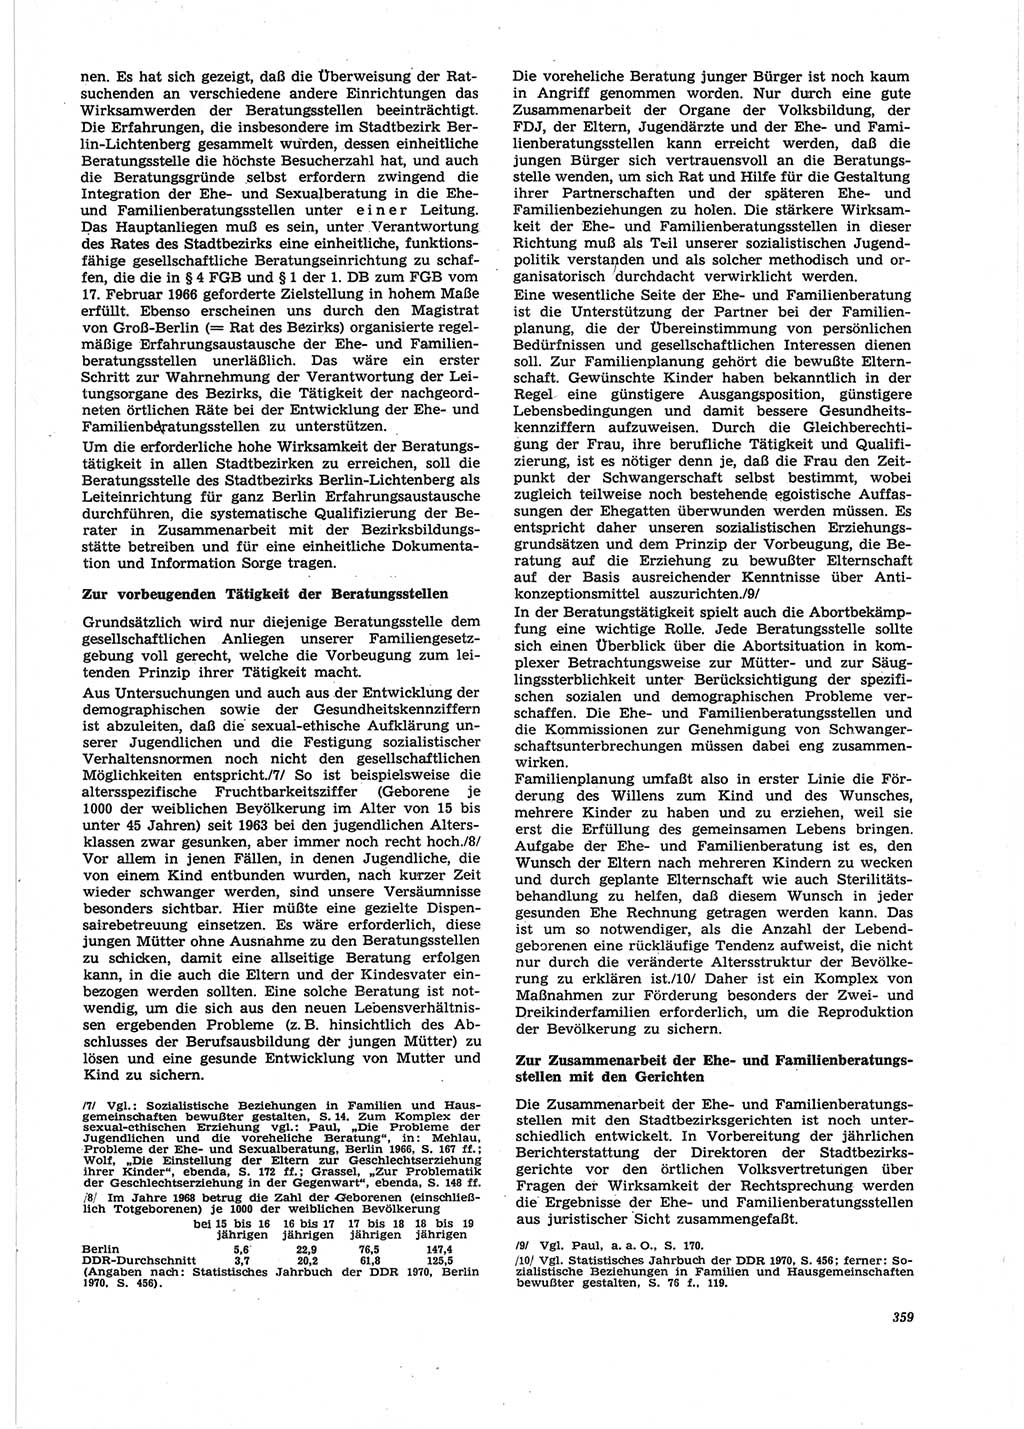 Neue Justiz (NJ), Zeitschrift für Recht und Rechtswissenschaft [Deutsche Demokratische Republik (DDR)], 25. Jahrgang 1971, Seite 359 (NJ DDR 1971, S. 359)